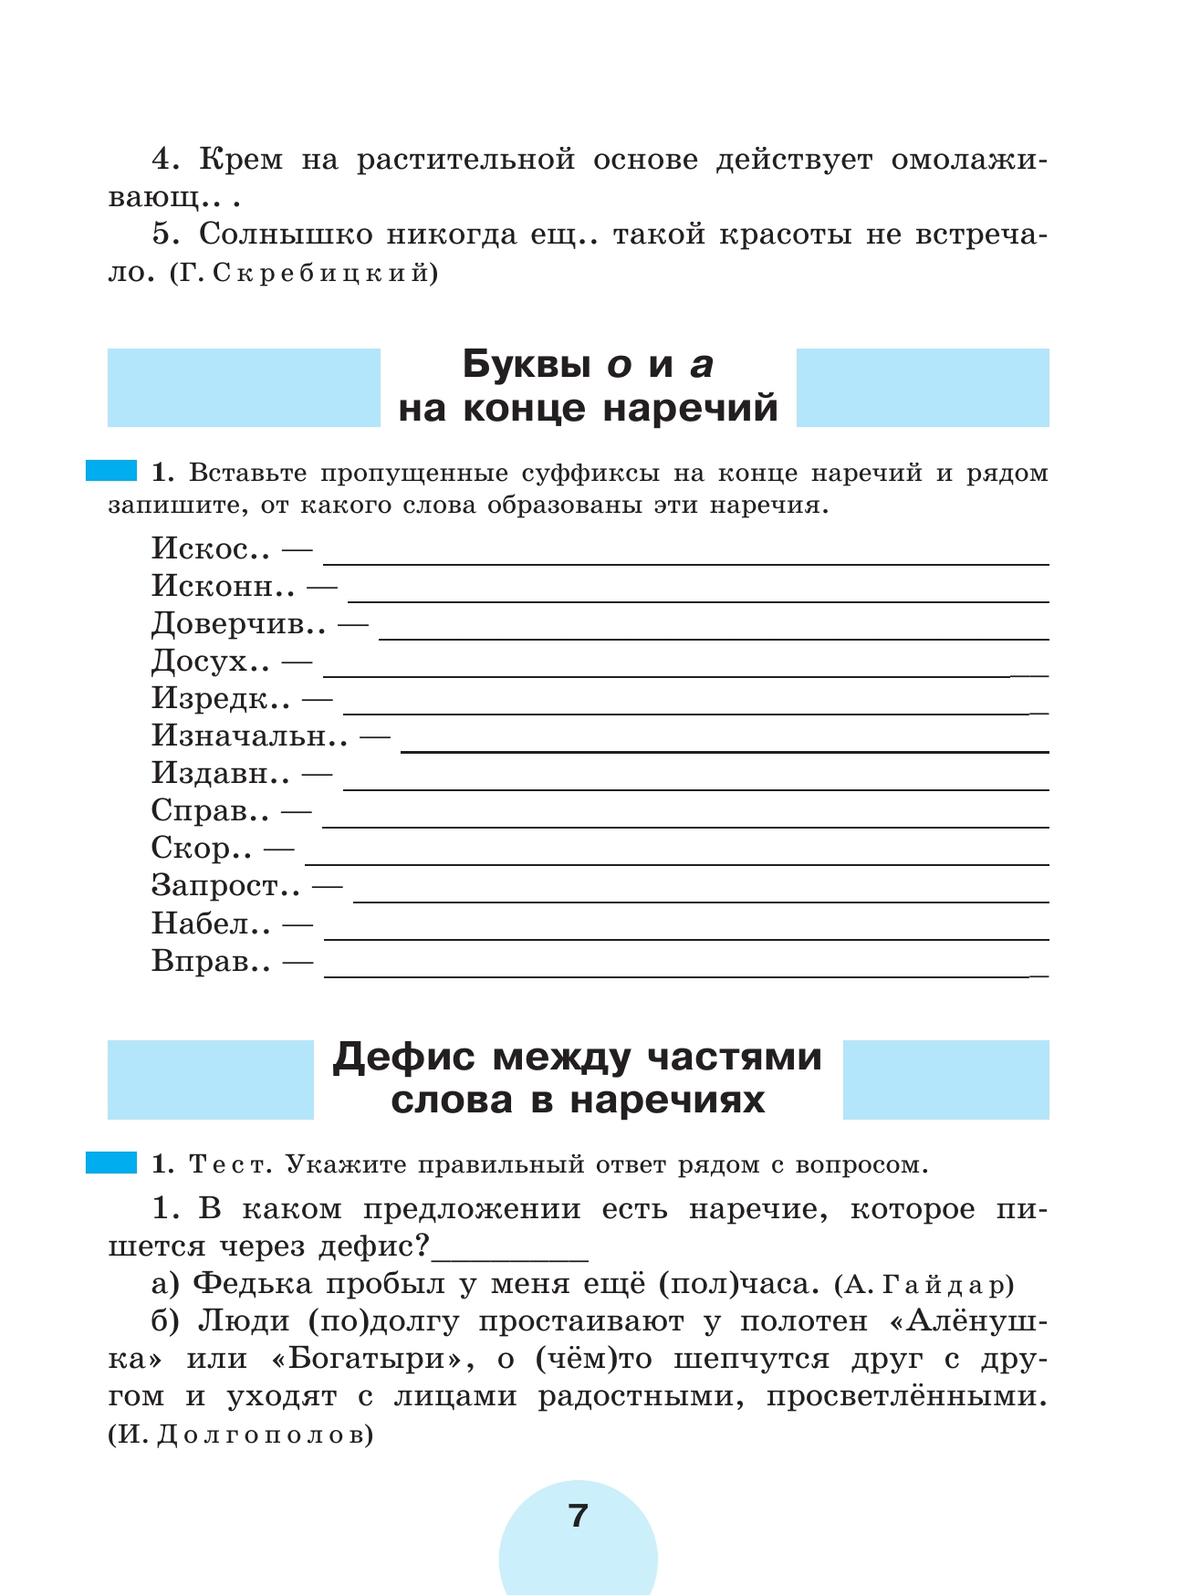 Русский язык. Рабочая тетрадь. 7 класс. В 2 ч. Часть 2 4